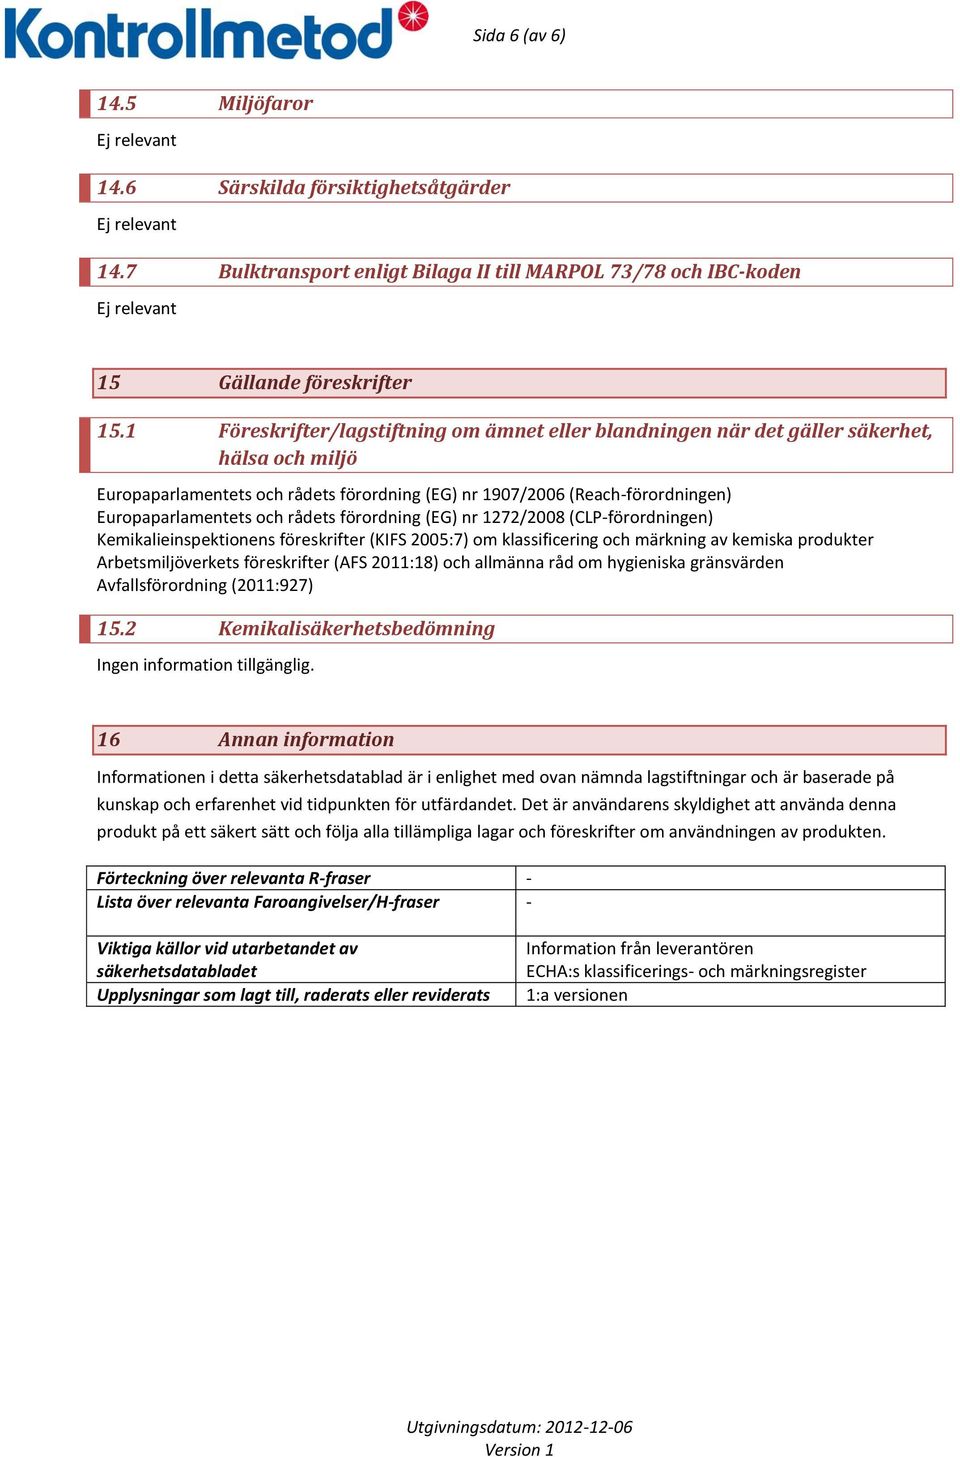 rådets förordning (EG) nr 1272/2008 (CLP-förordningen) Kemikalieinspektionens föreskrifter (KIFS 2005:7) om klassificering och märkning av kemiska produkter Arbetsmiljöverkets föreskrifter (AFS